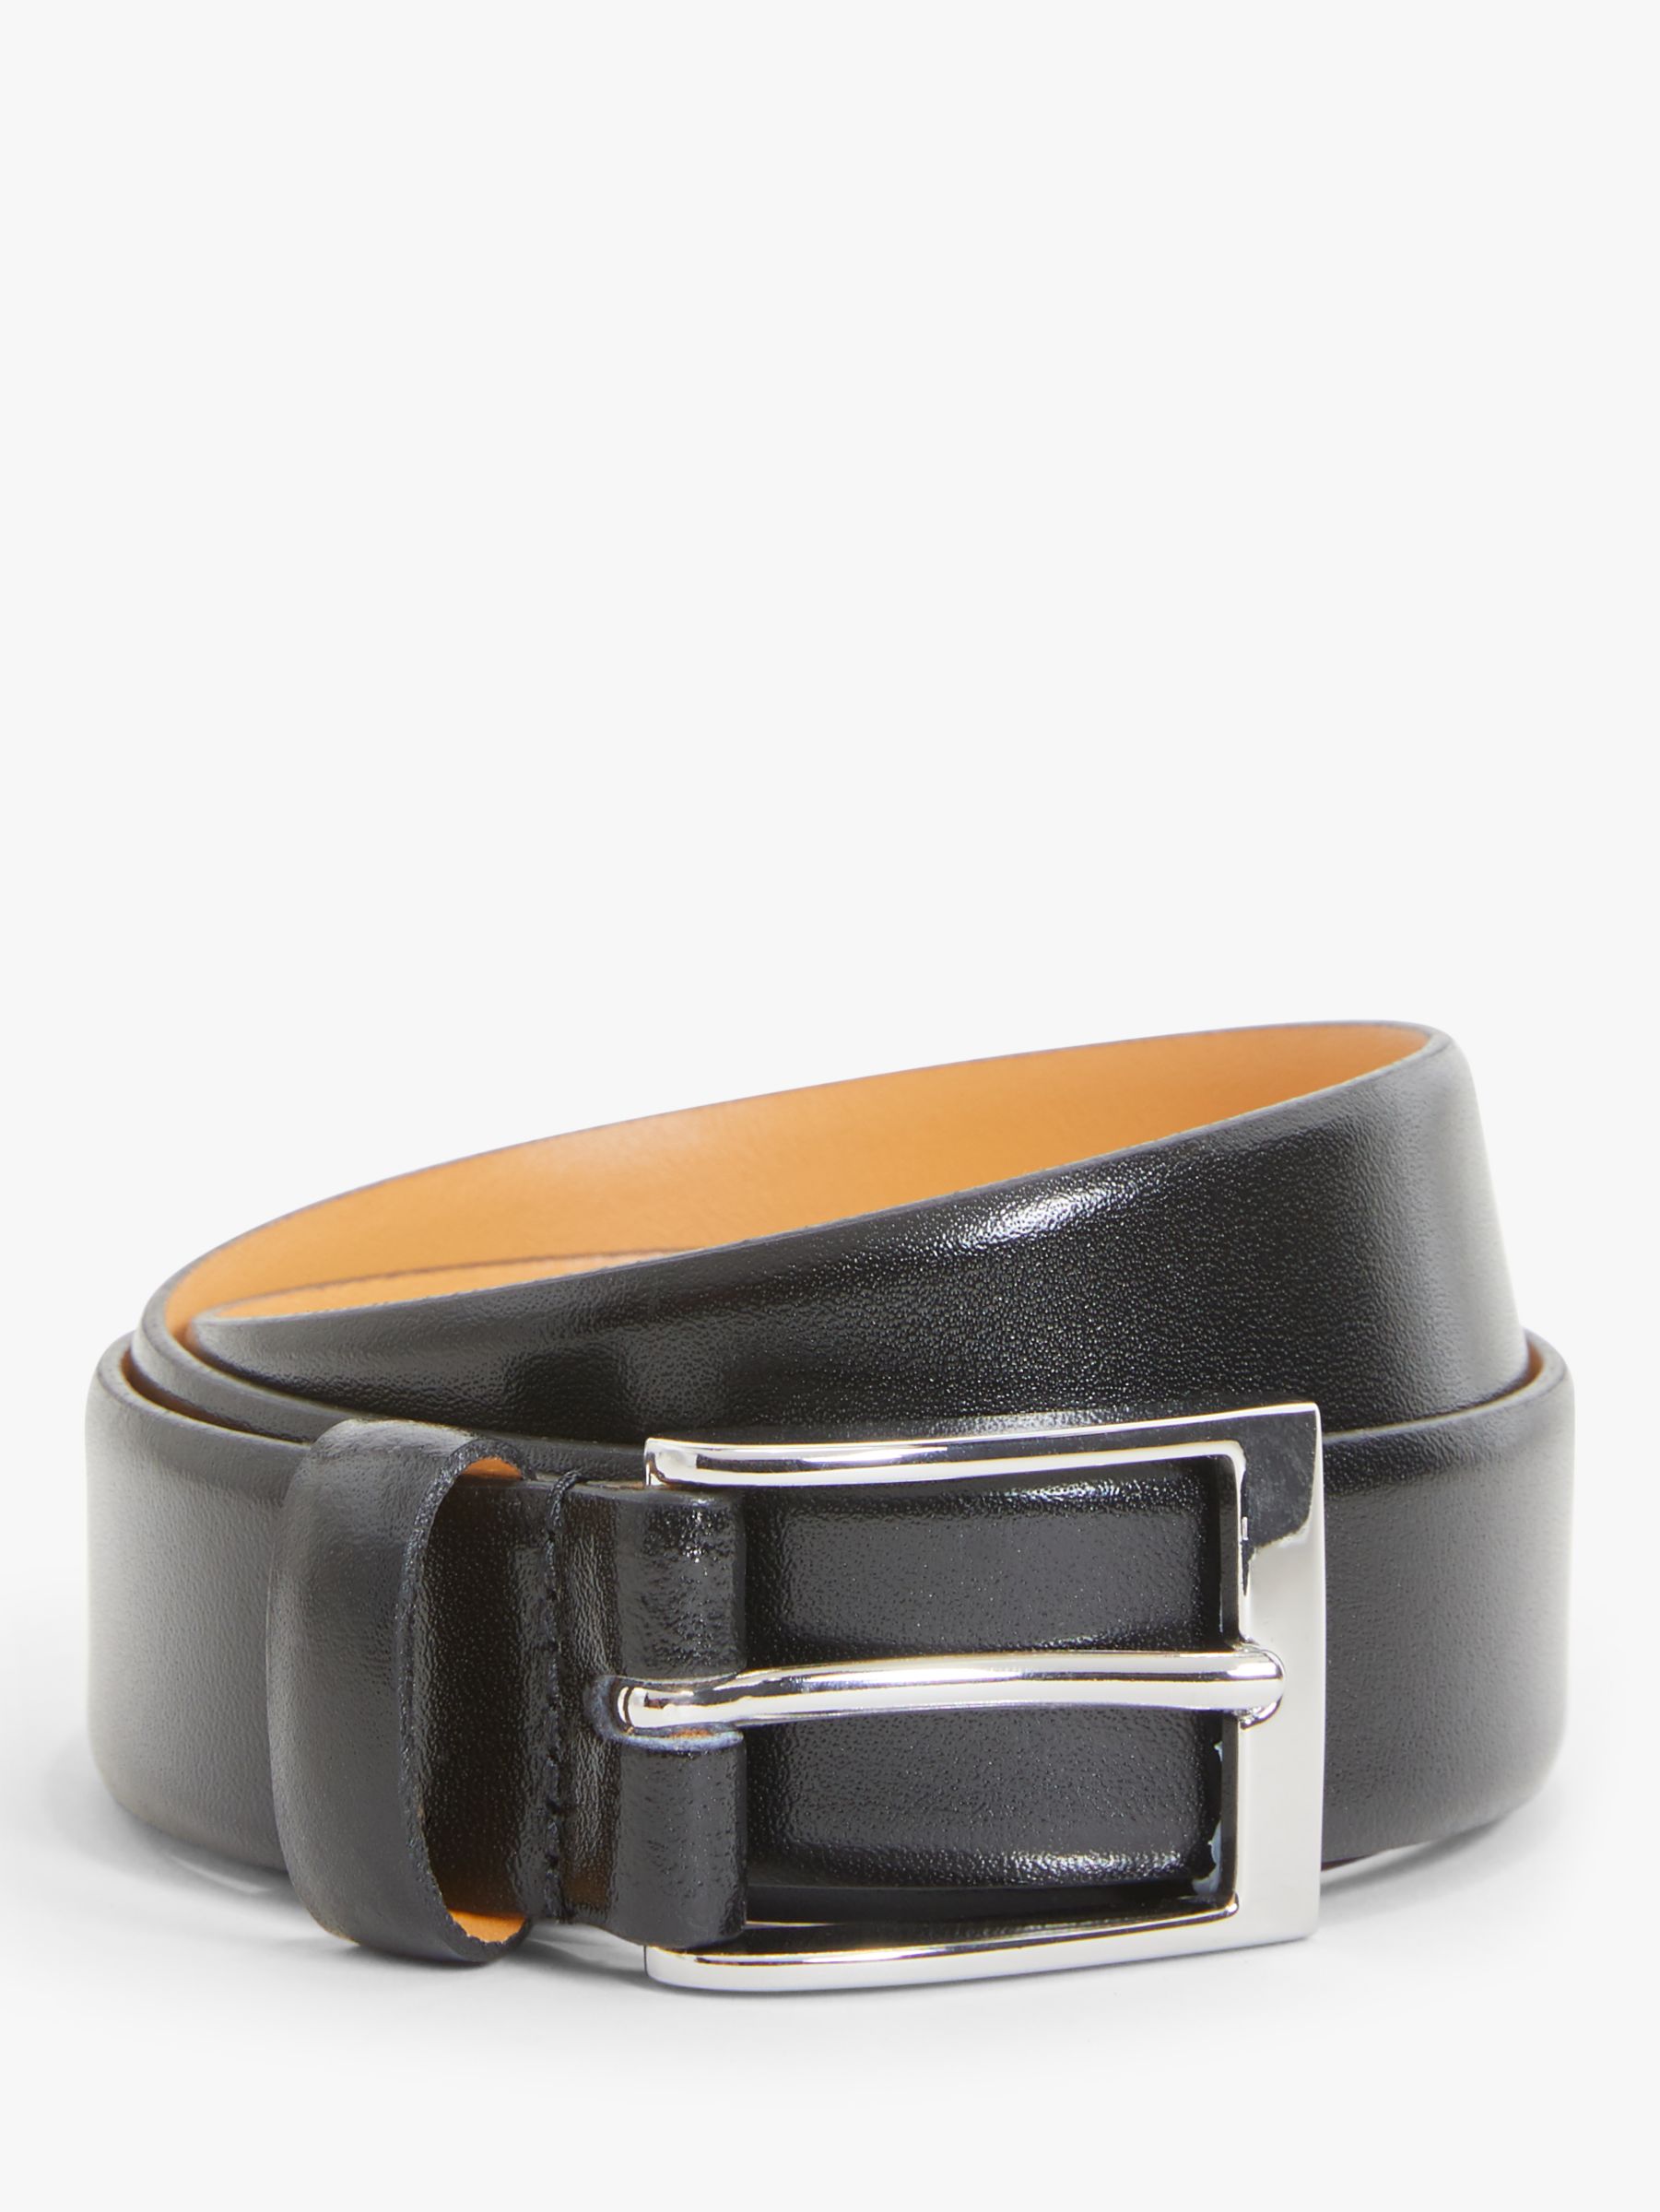 John Lewis Made in England 30mm Formal Leather Belt, Black, S